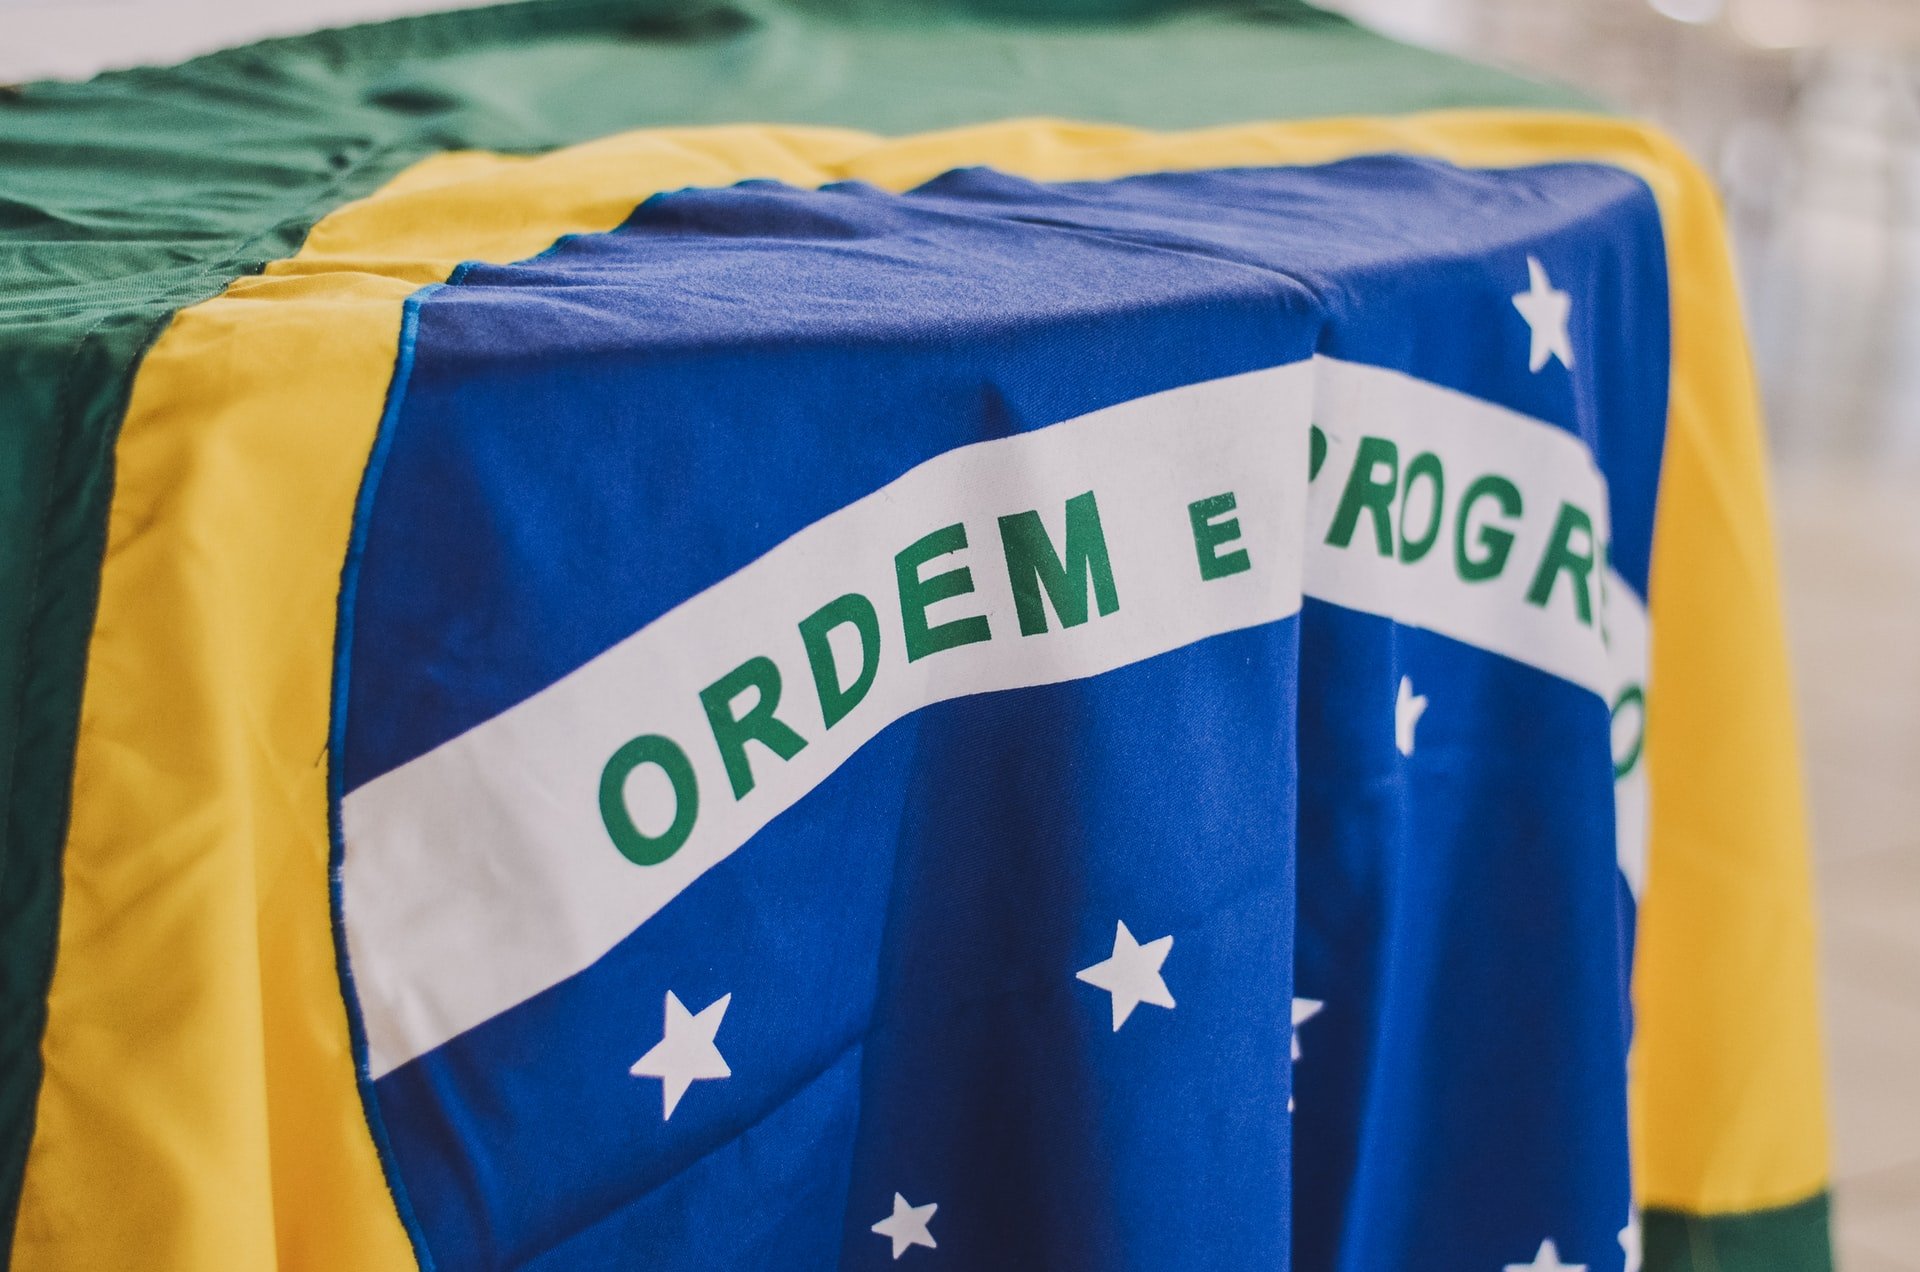 Conheça todos os benefícios que os brasileiros têm direito! Fonte: Unsplash.